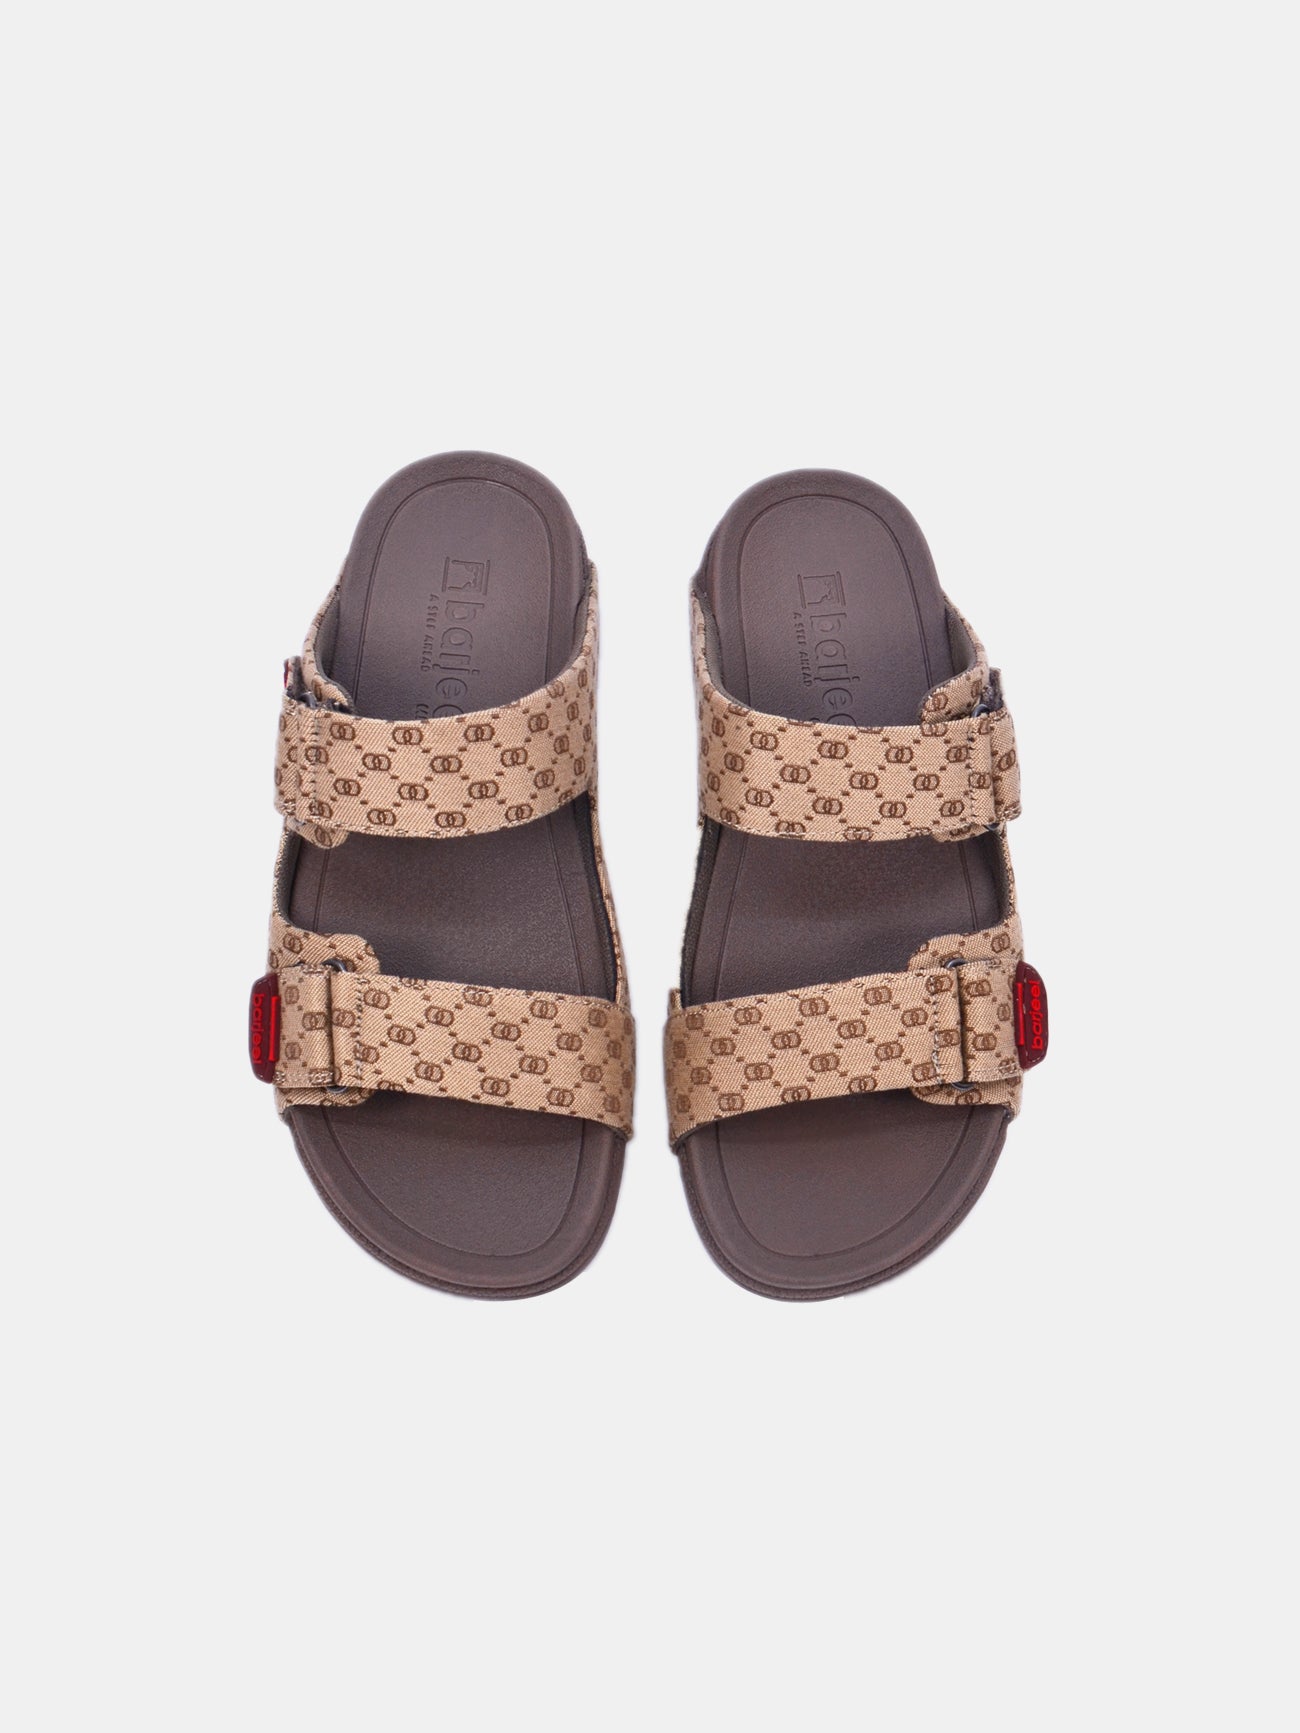 Barjeel Uno 20272-2 Men's Arabic Sandals #color_Beige